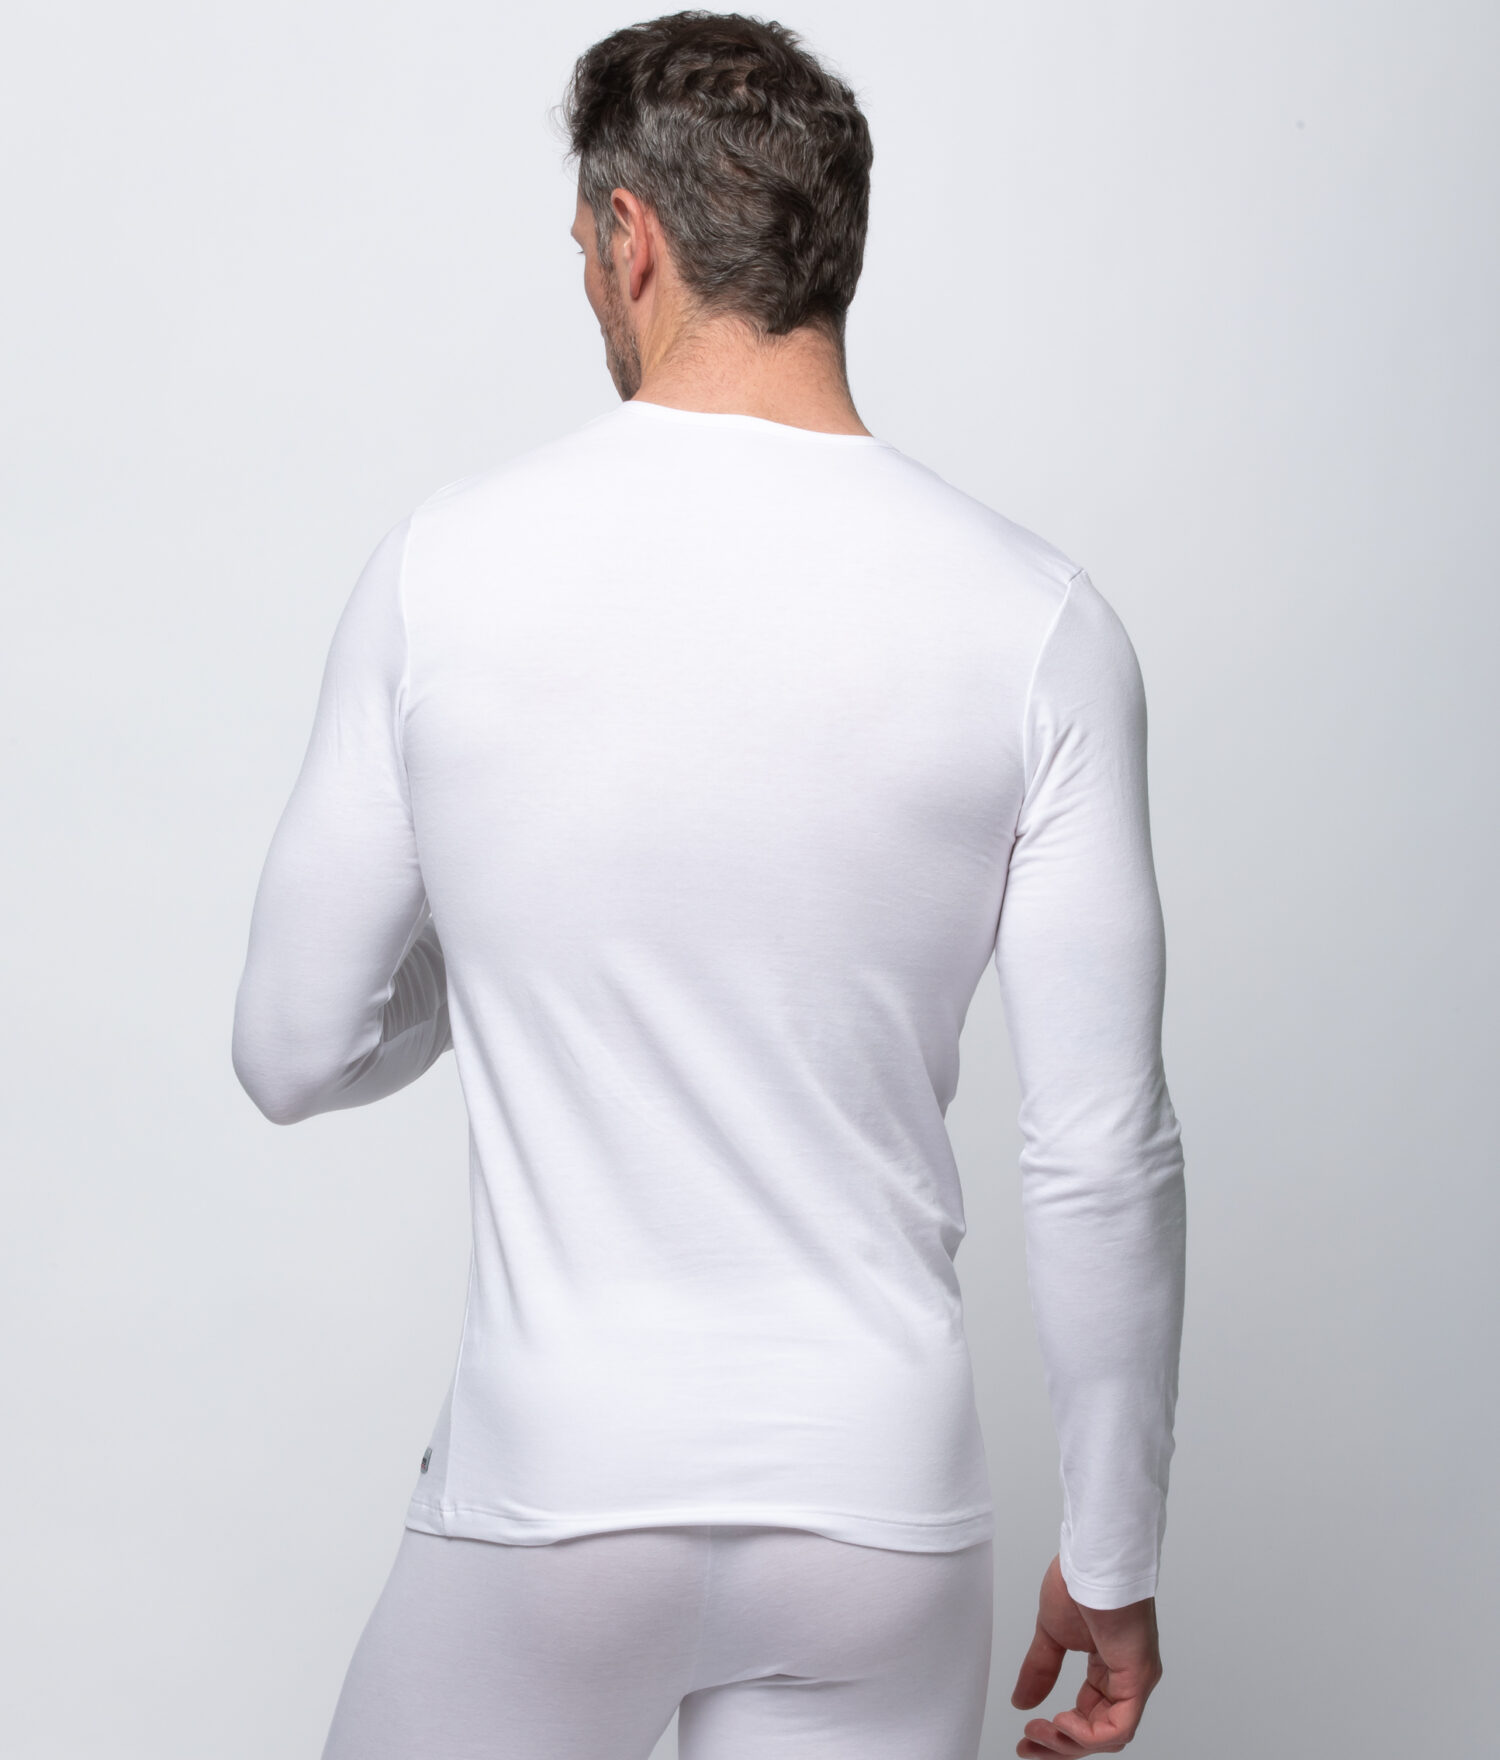 Camiseta interior de hombre en color blanco de manga corta · Abanderado ·  El Corte Inglés